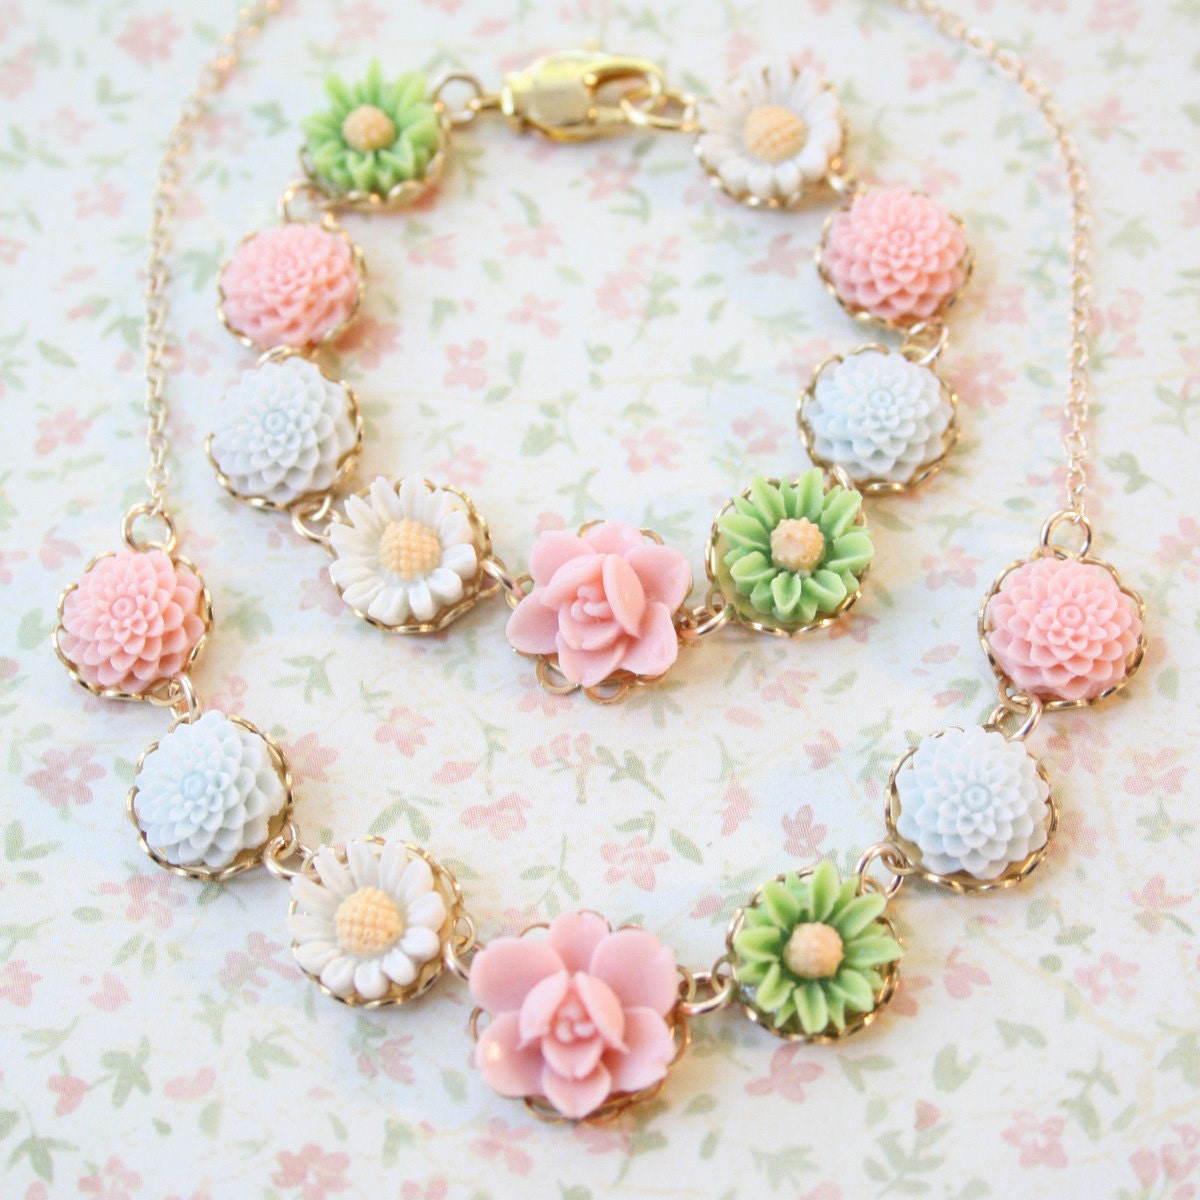 Pastel Floral Necklace and Bracelet Gift Set